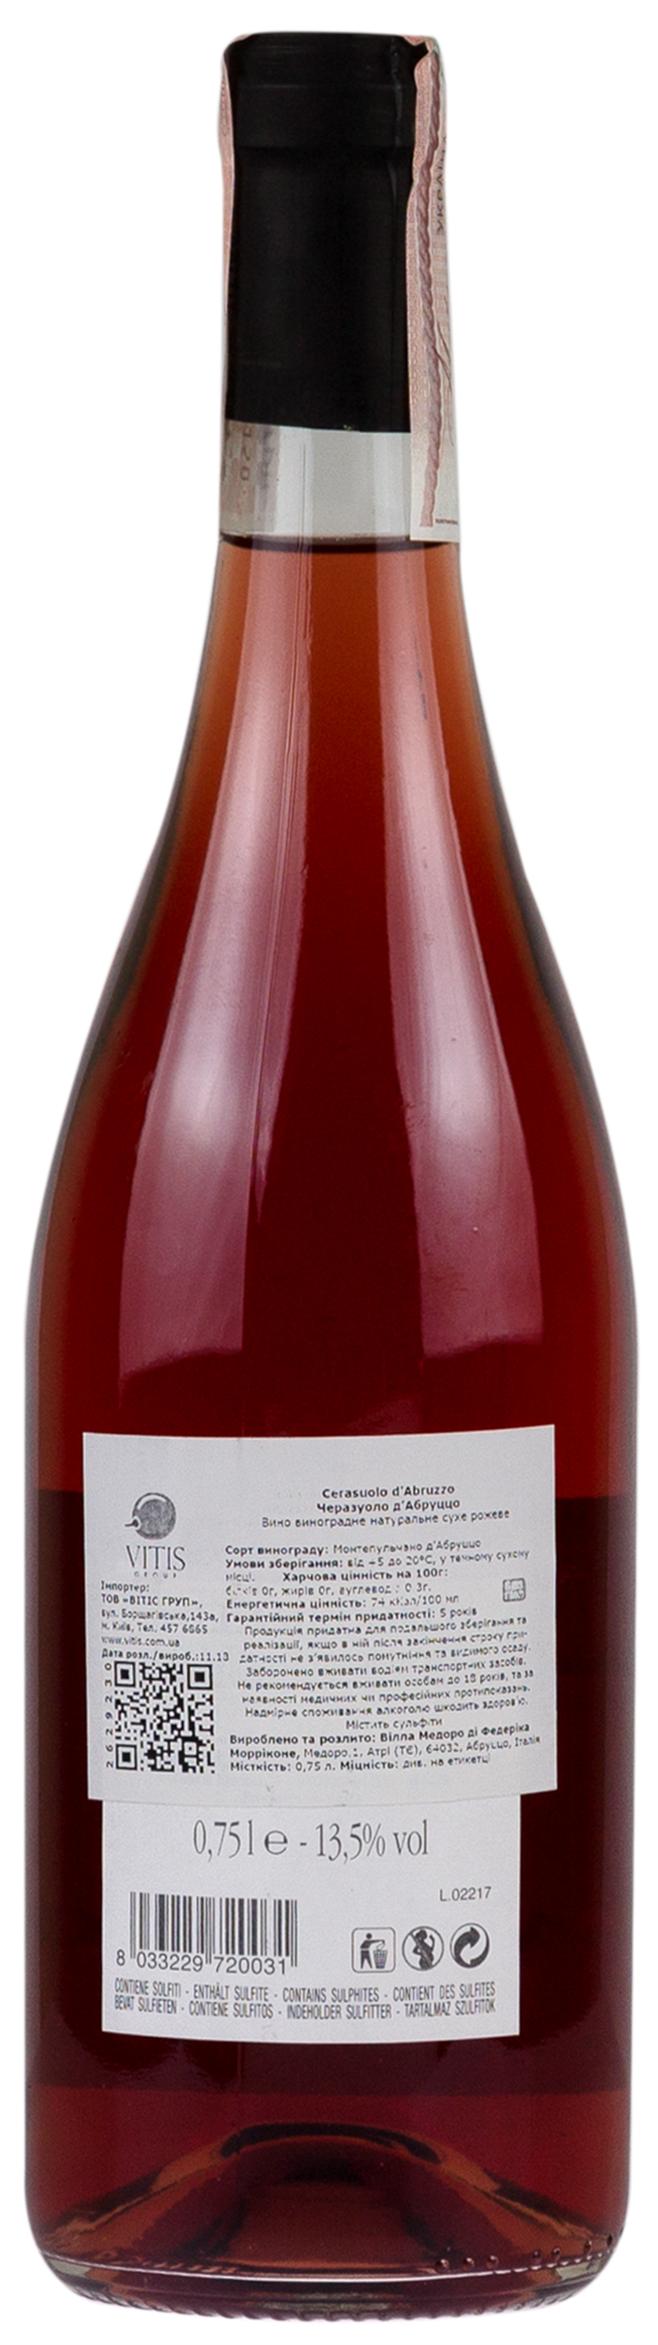 Villamedoro Cerasuolo d'Abruzzo Rose 2015 Set 6 Bottles - 2